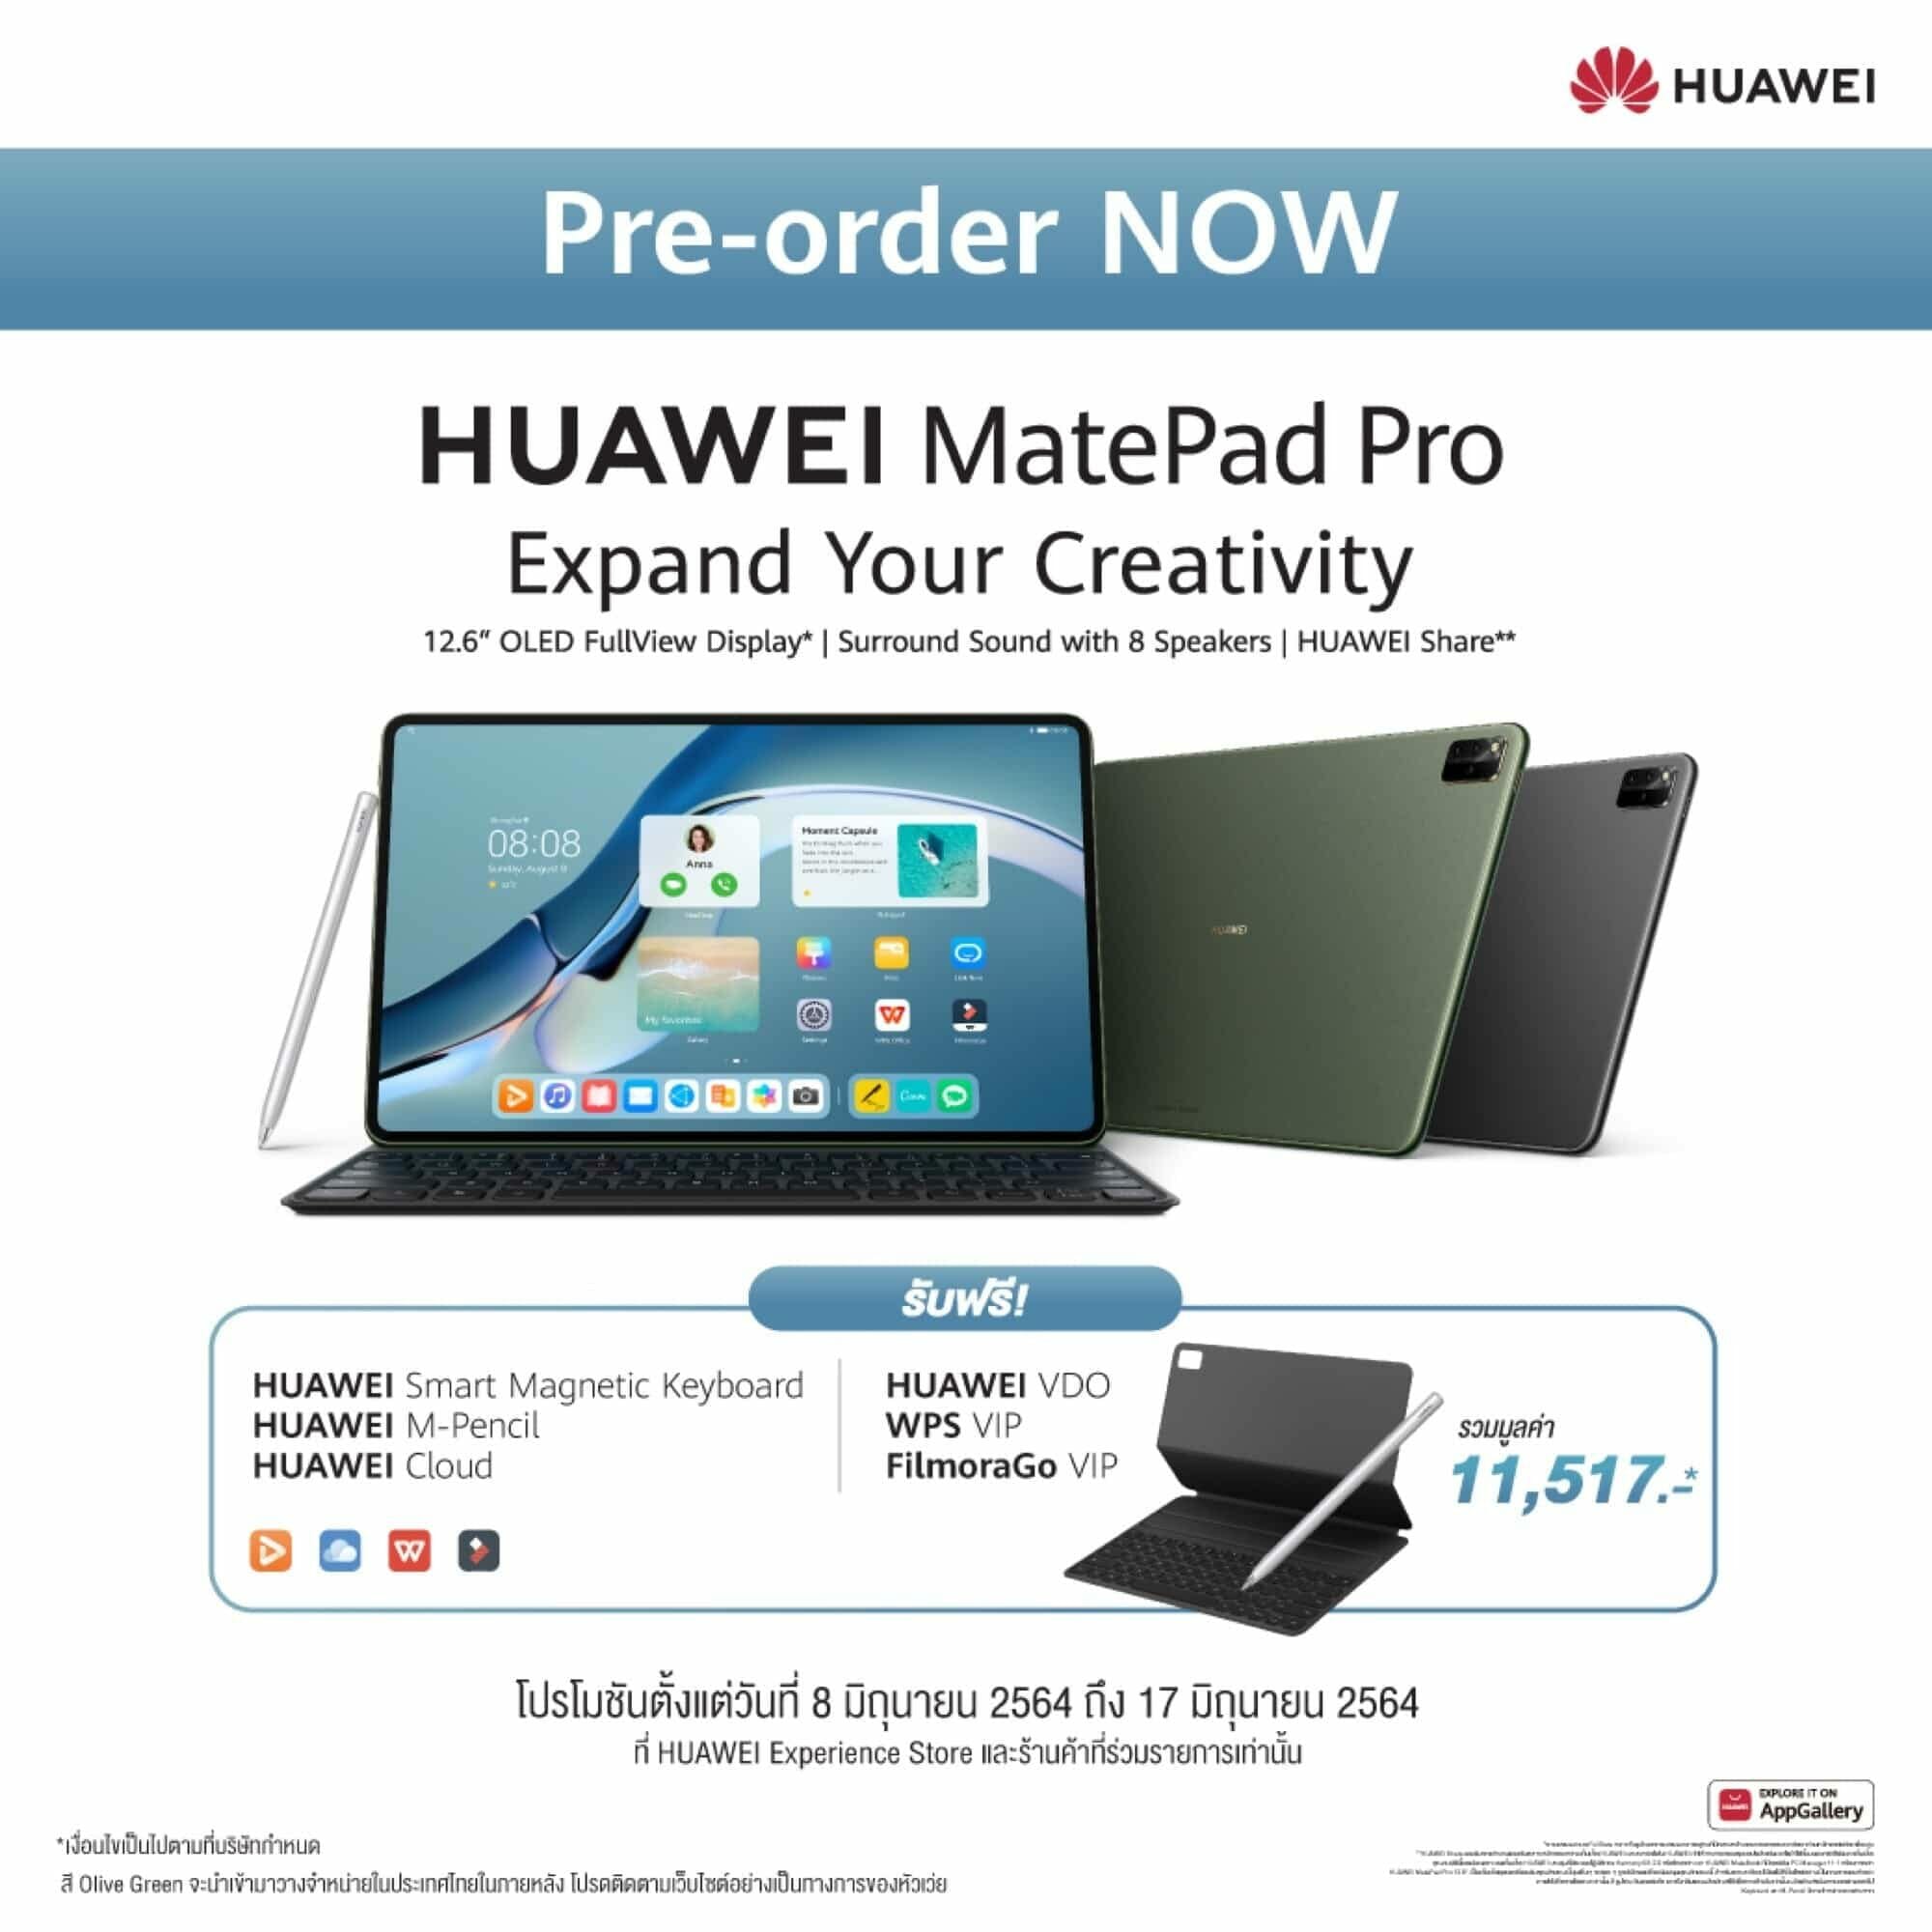 รวมจุดเด่น HUAWEI MatePad Pro 12.6-inch แท็บเล็ตพรีเมียมเพื่อการทำงานระดับโปรและความบันเทิง 15